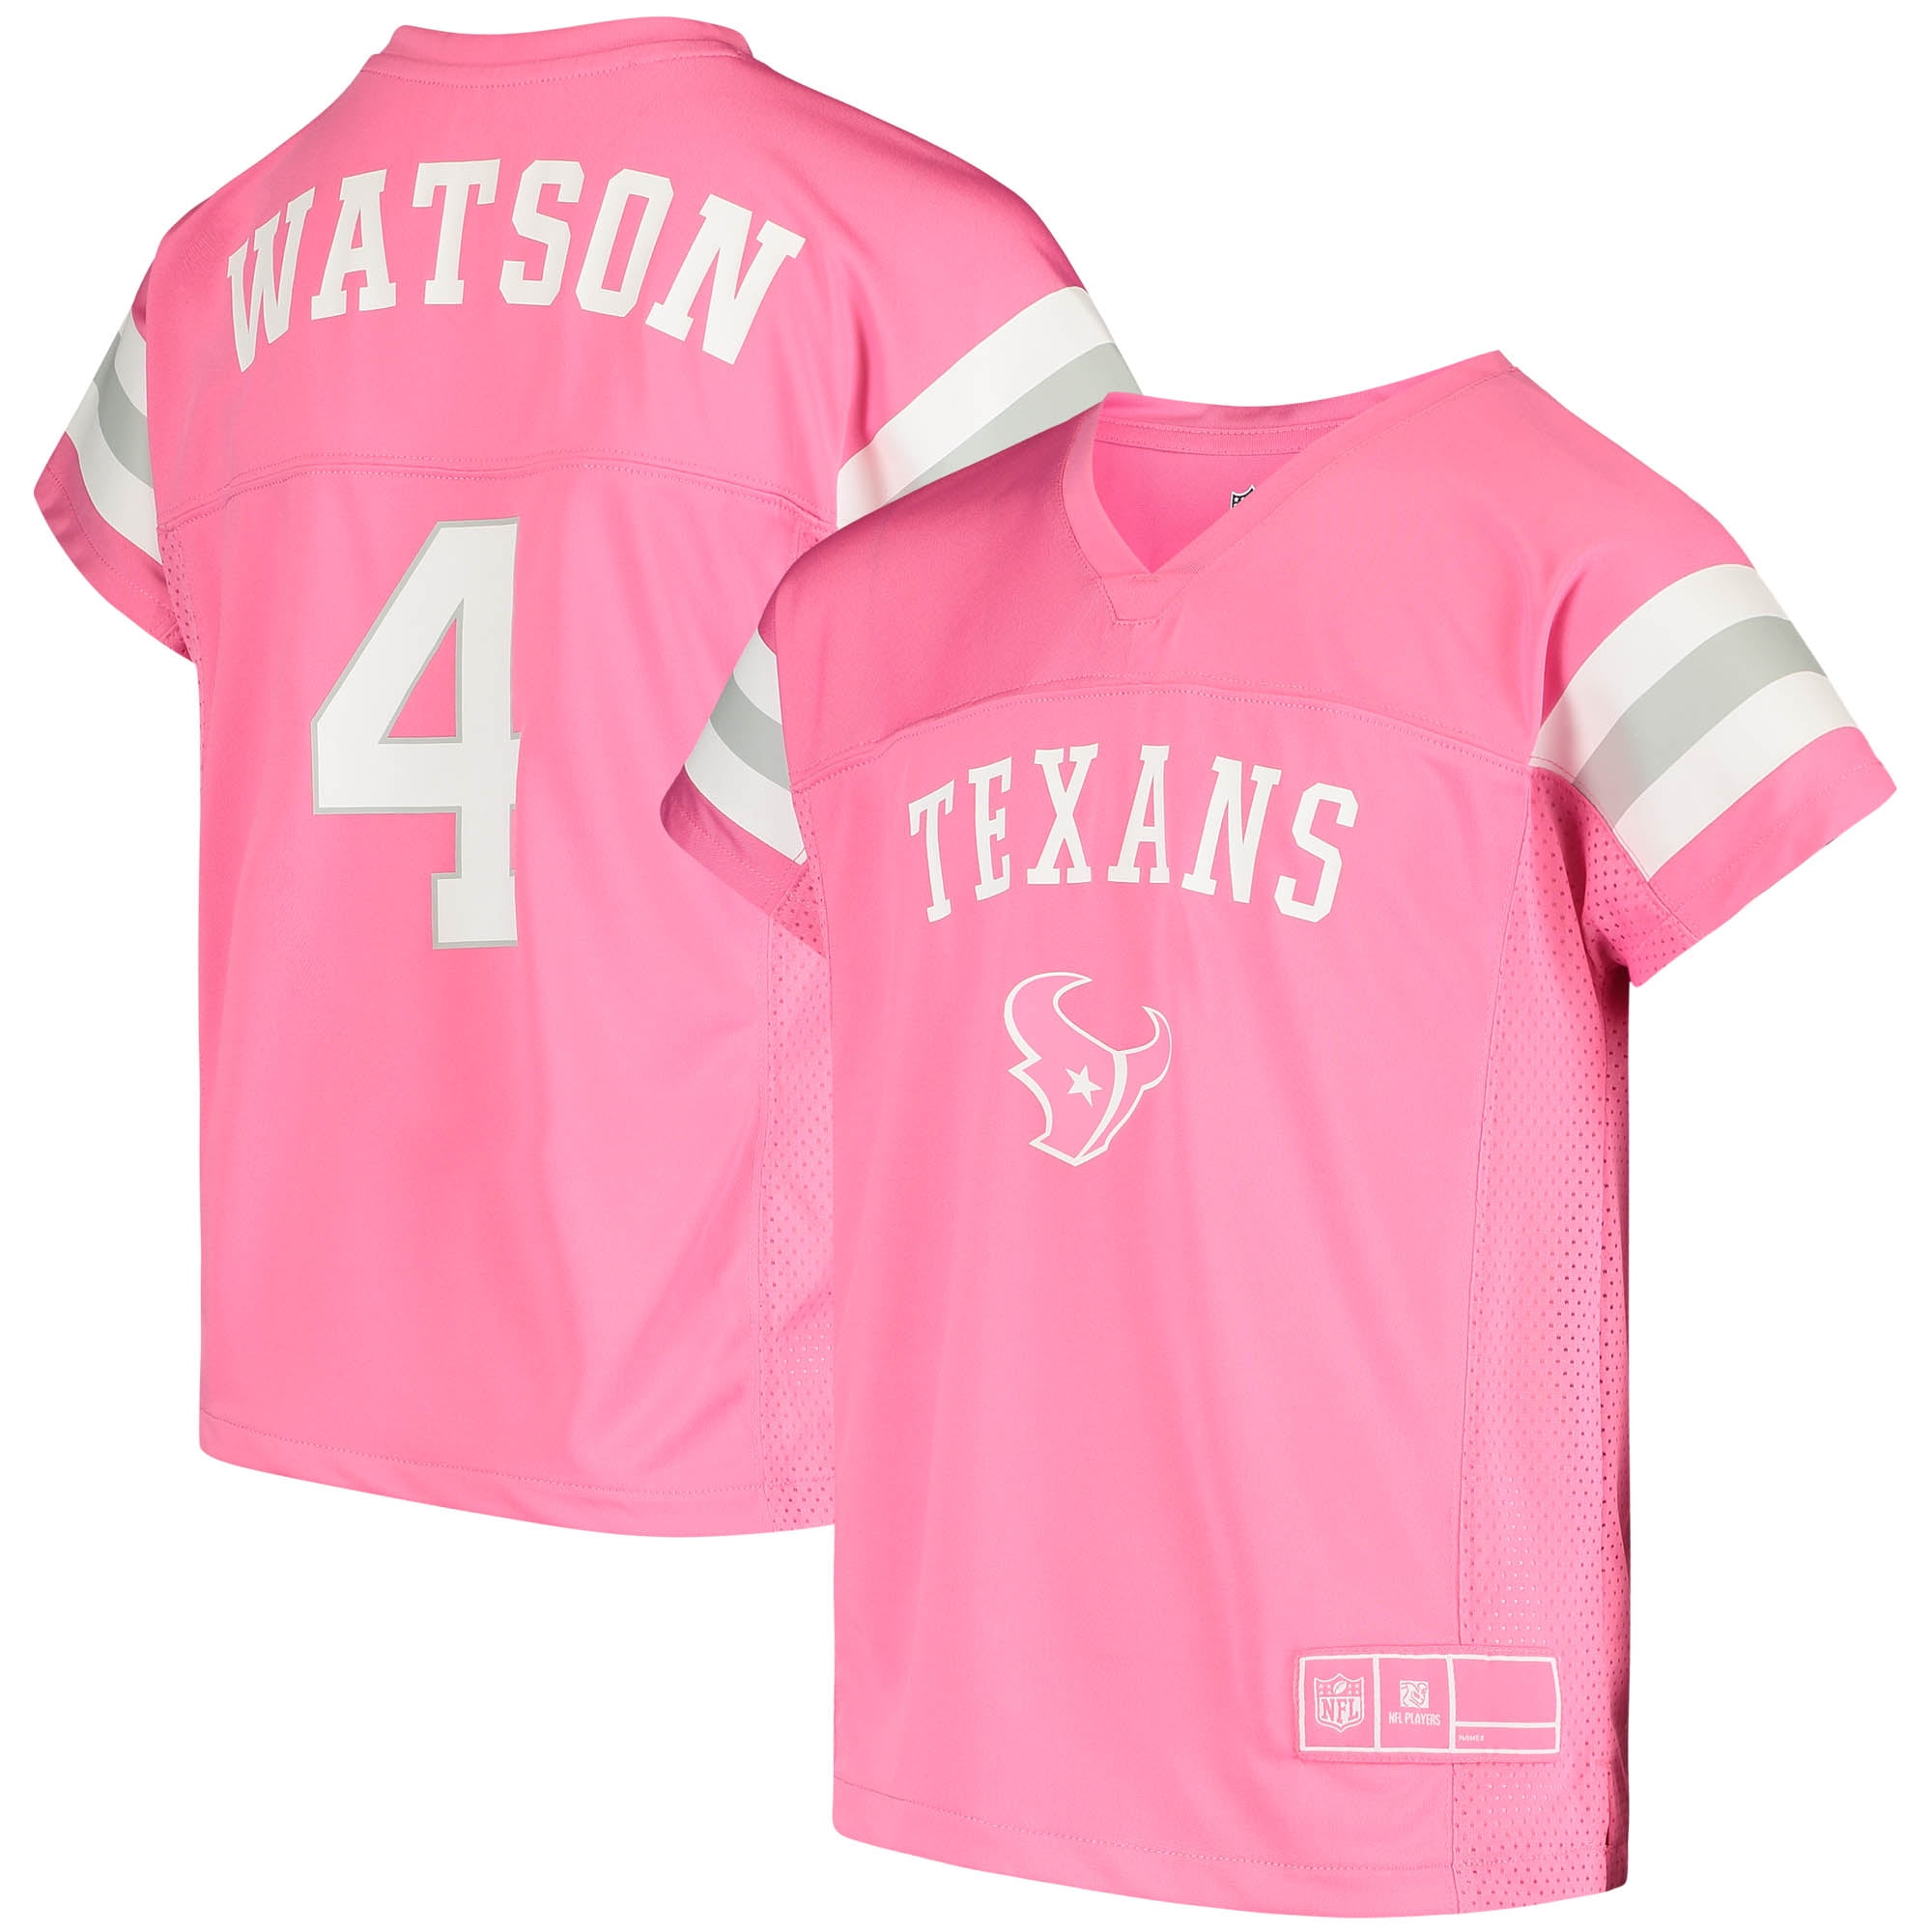 pink texans shirt